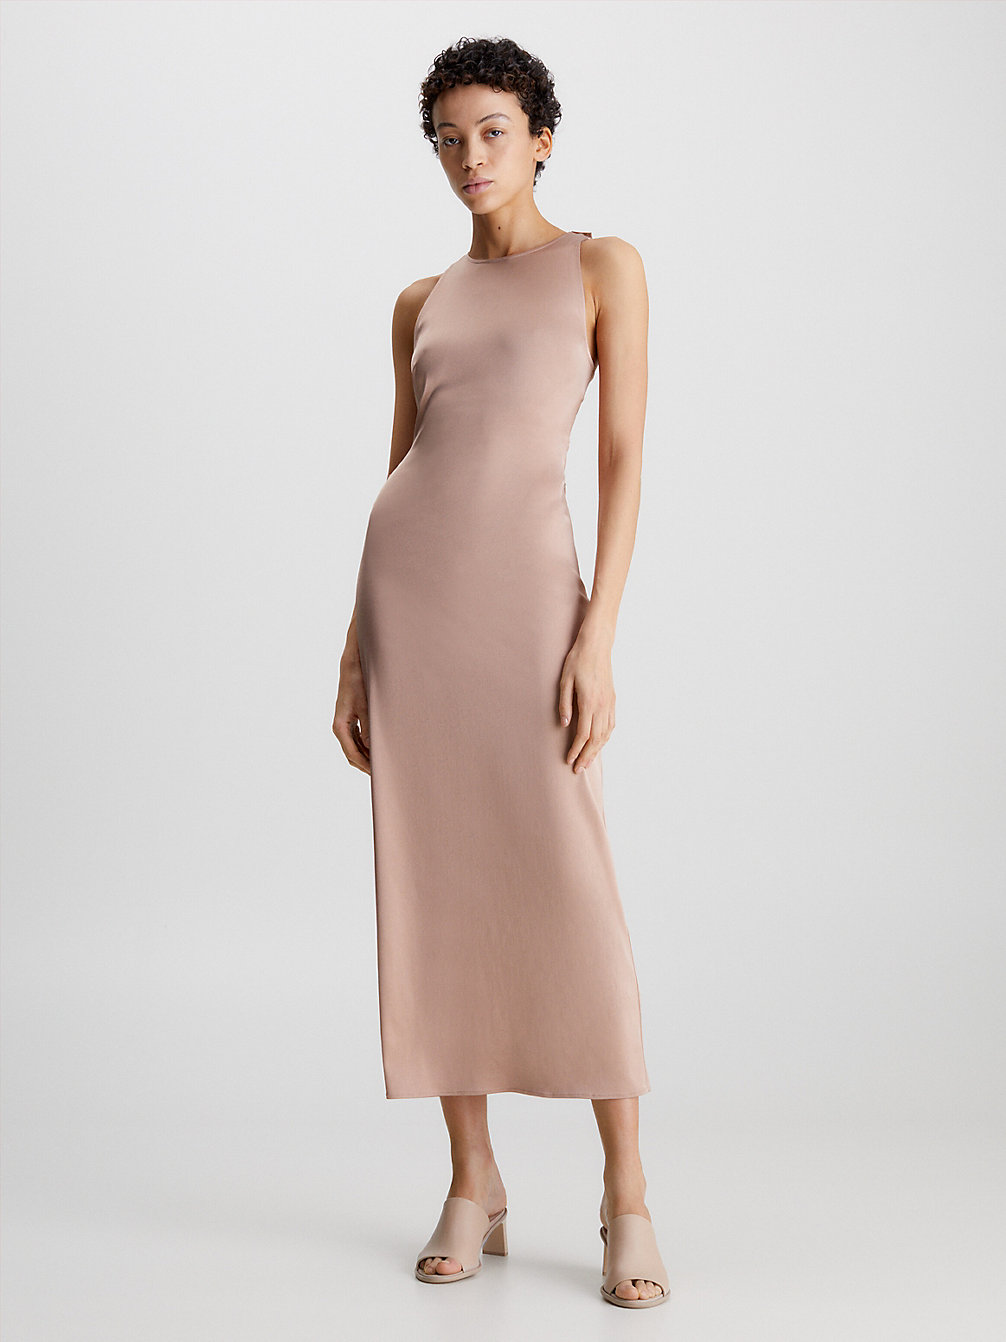 ROEBUCK > Dopasowana Sukienka Midi Ze Skręconym Tyłem > undefined Kobiety - Calvin Klein